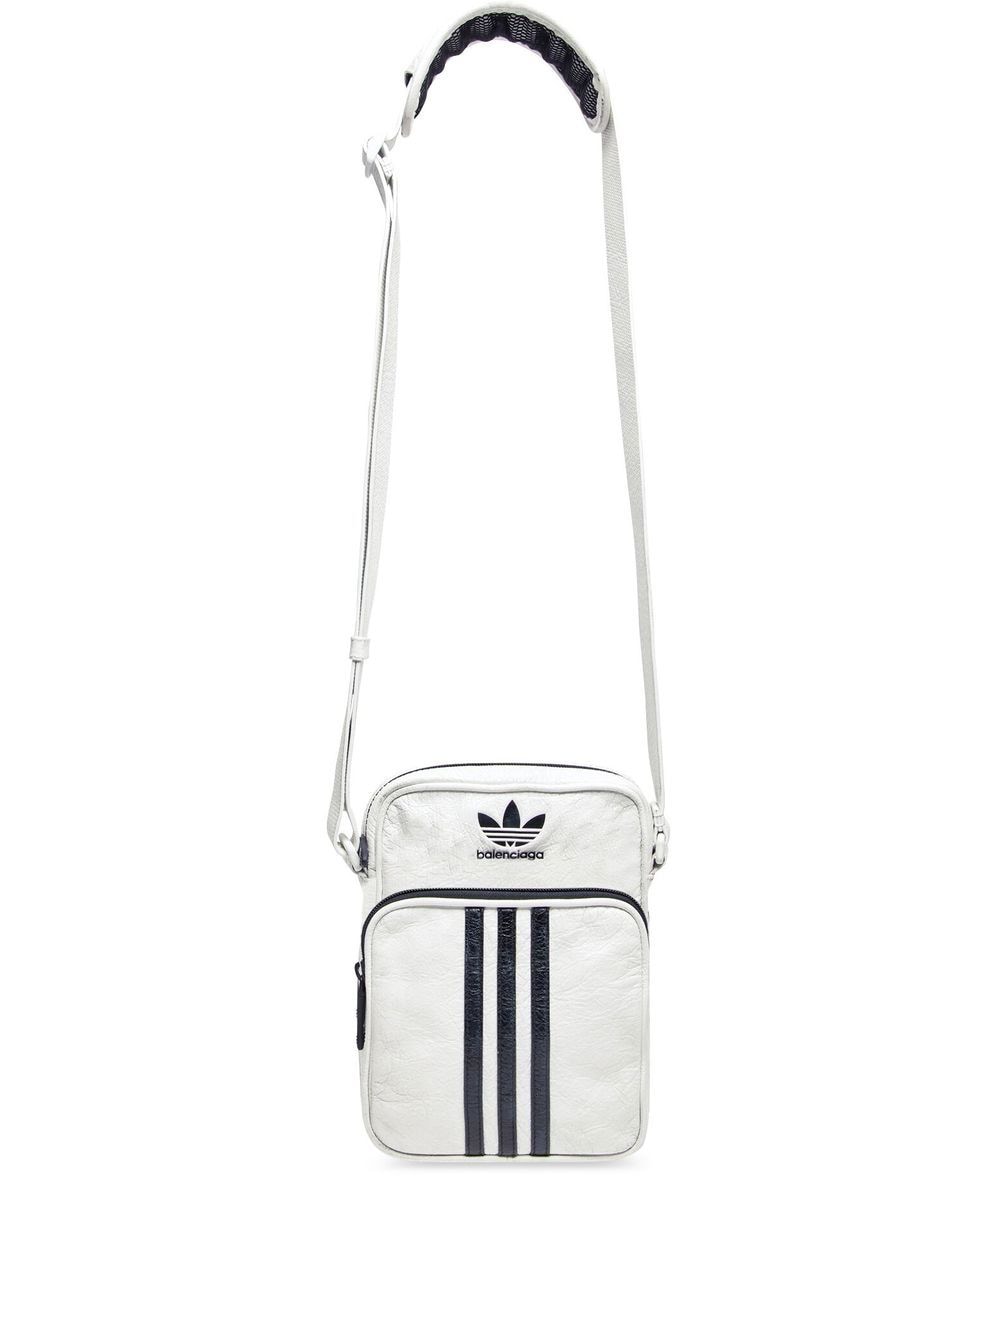 Balenciaga x Adidas crossbody messenger bag - White